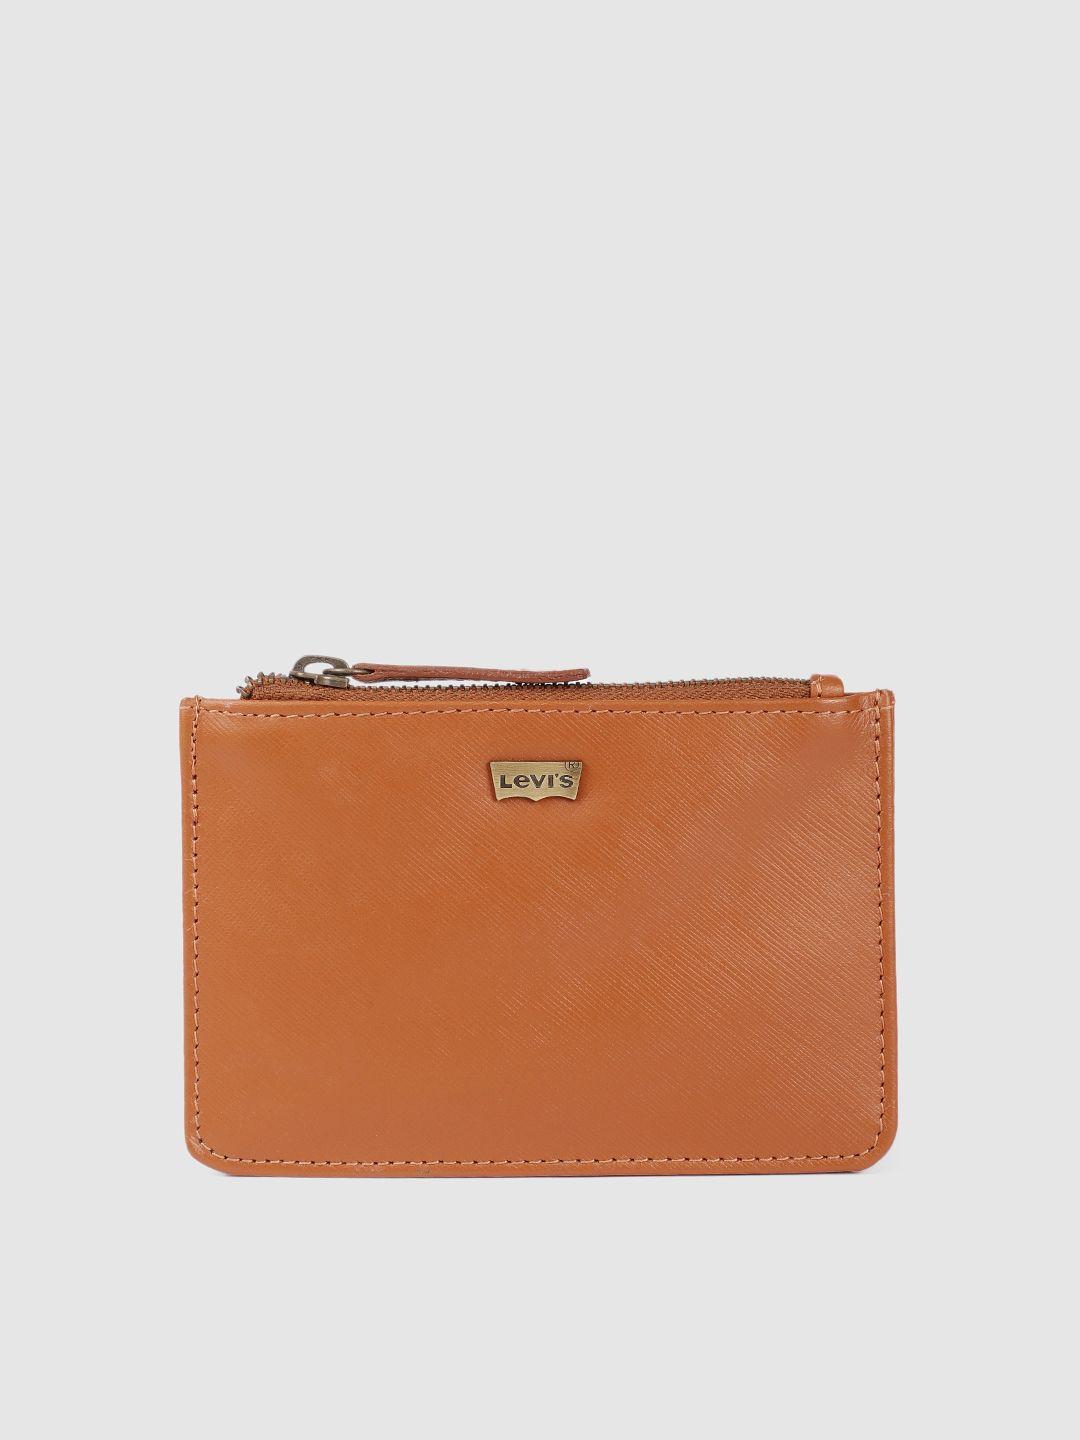 levis-men-brown-leather-zip-around-wallet